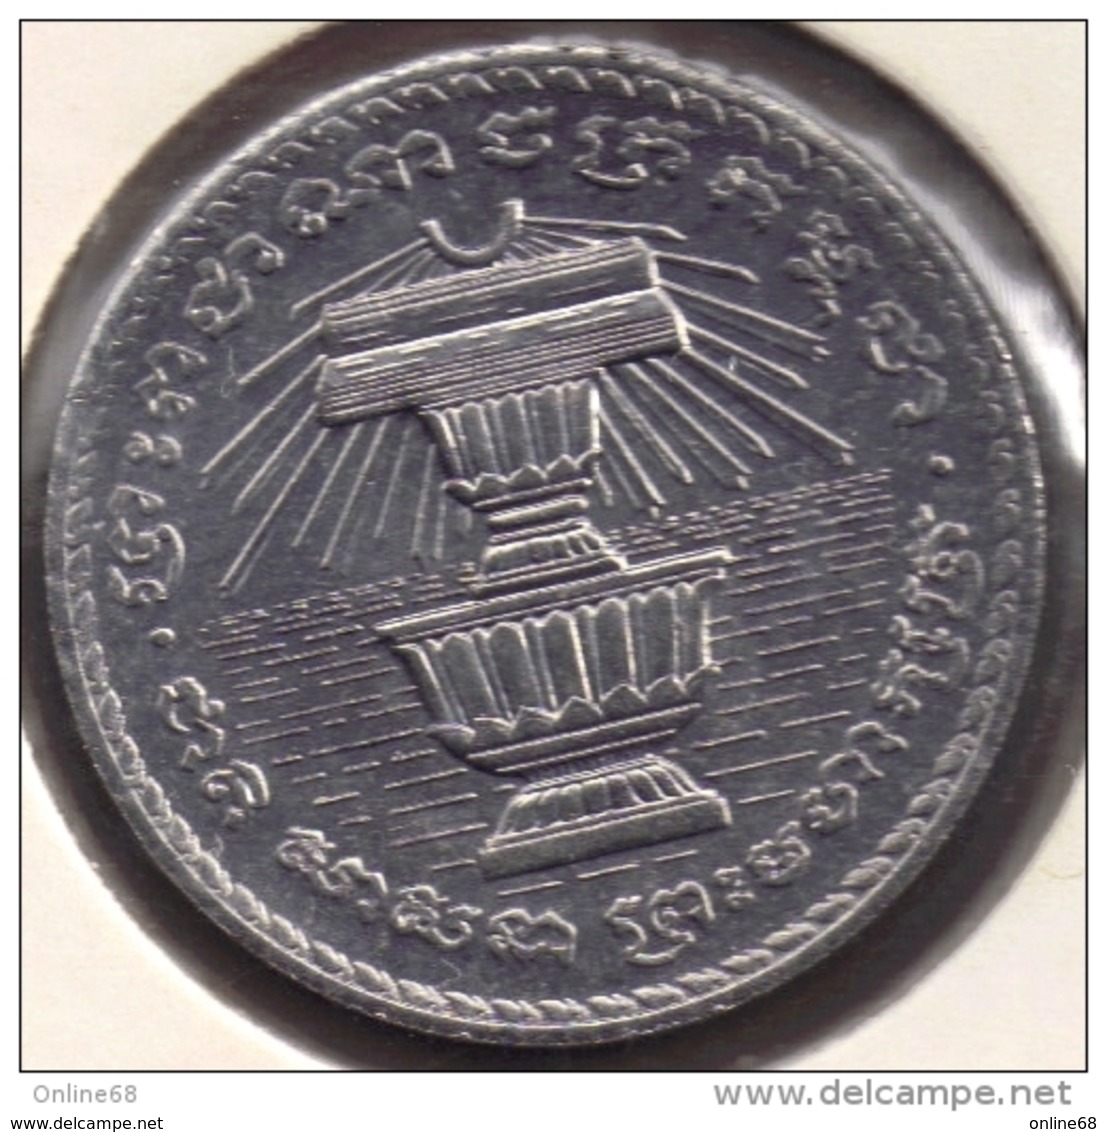 LOT 4 COINS JAPAN 1 SEN 1922 - CAMBODIA 200 RIELS 1994 - CHINA 1 YUAN 1991 - MONGOLIA 50 MONGO 1981 - Lots & Kiloware - Coins